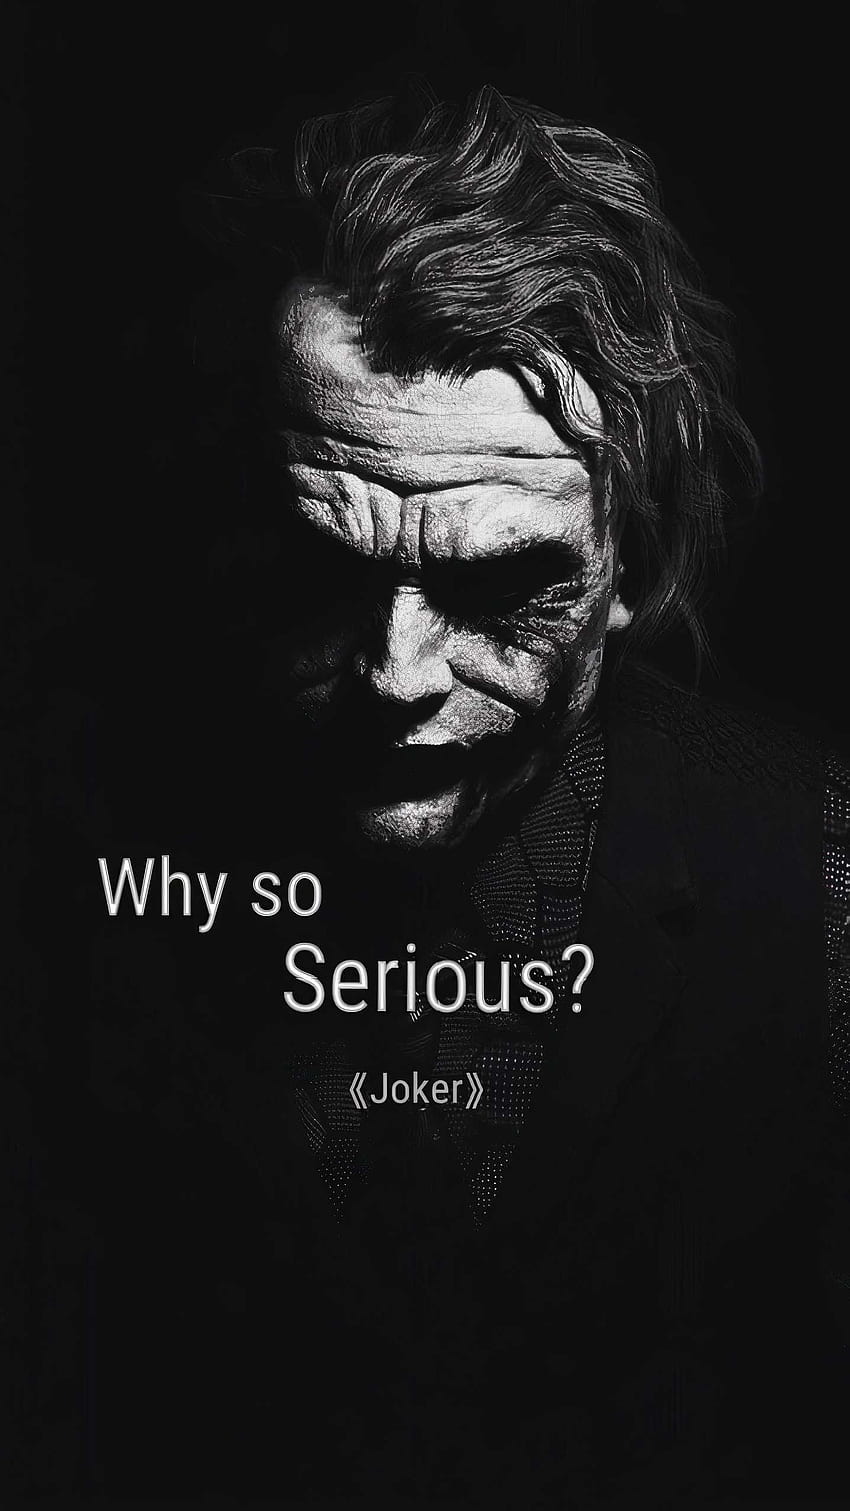 Der Joker, warum so ernst?, Joker-Zitat HD-Handy-Hintergrundbild